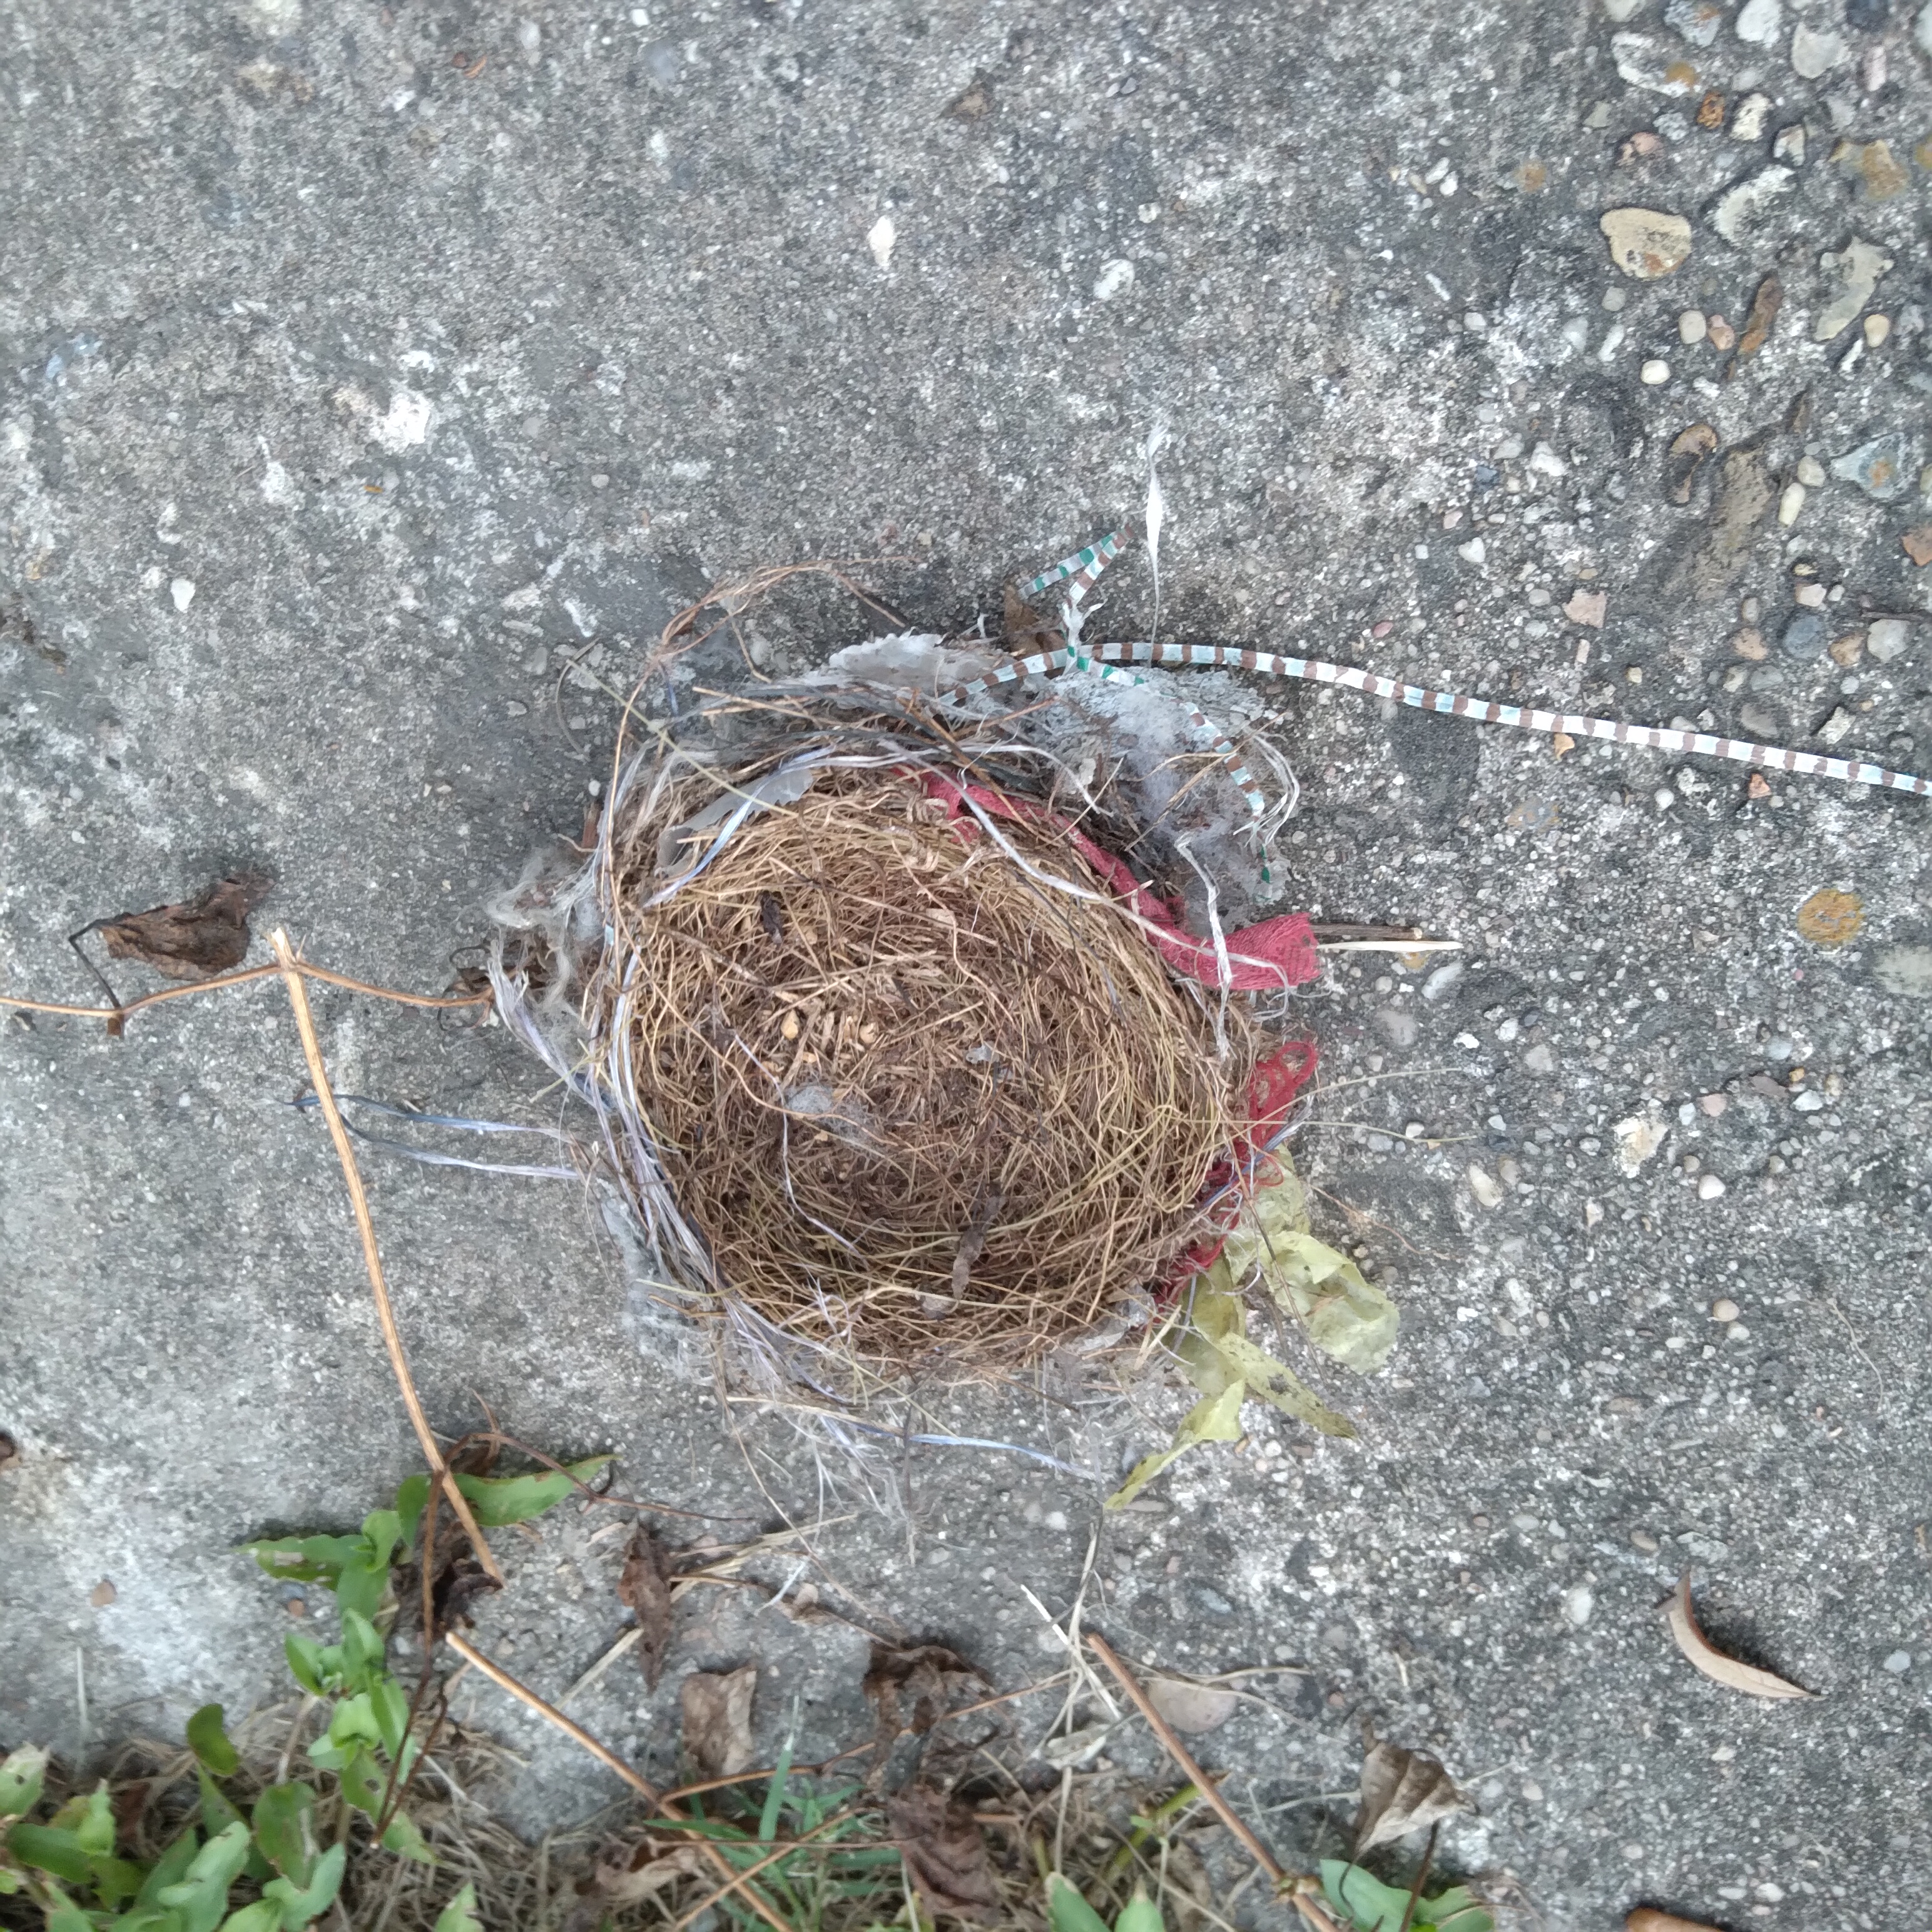 Snazzy bird's nest.